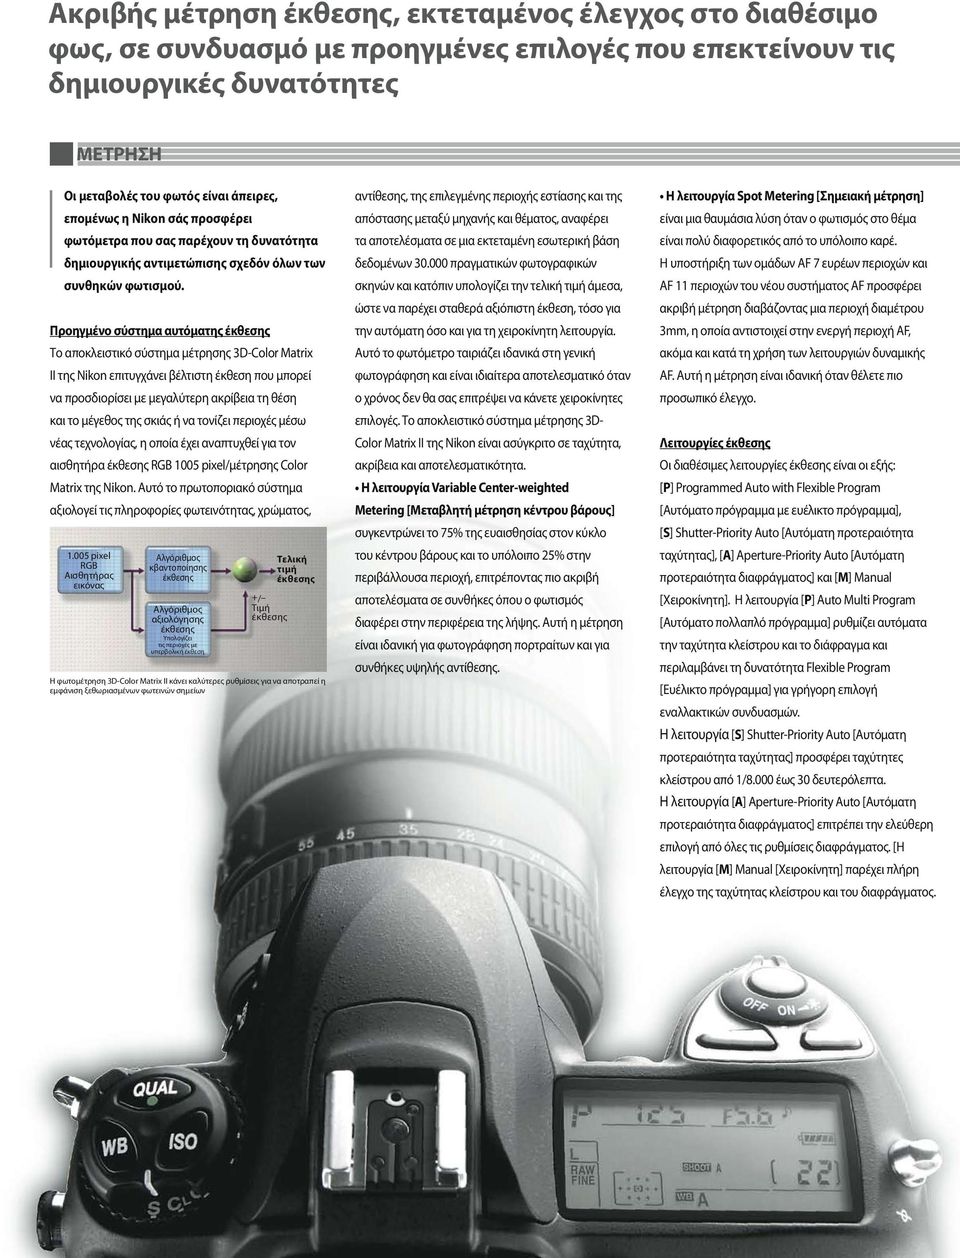 Προηγμένο σύστημα αυτόματης έκθεσης Το αποκλειστικό σύστημα μέτρησης 3D-Color Matrix II της Nikon επιτυγχάνει βέλτιστη έκθεση που μπορεί να προσδιορίσει με μεγαλύτερη ακρίβεια τη θέση και το μέγεθος